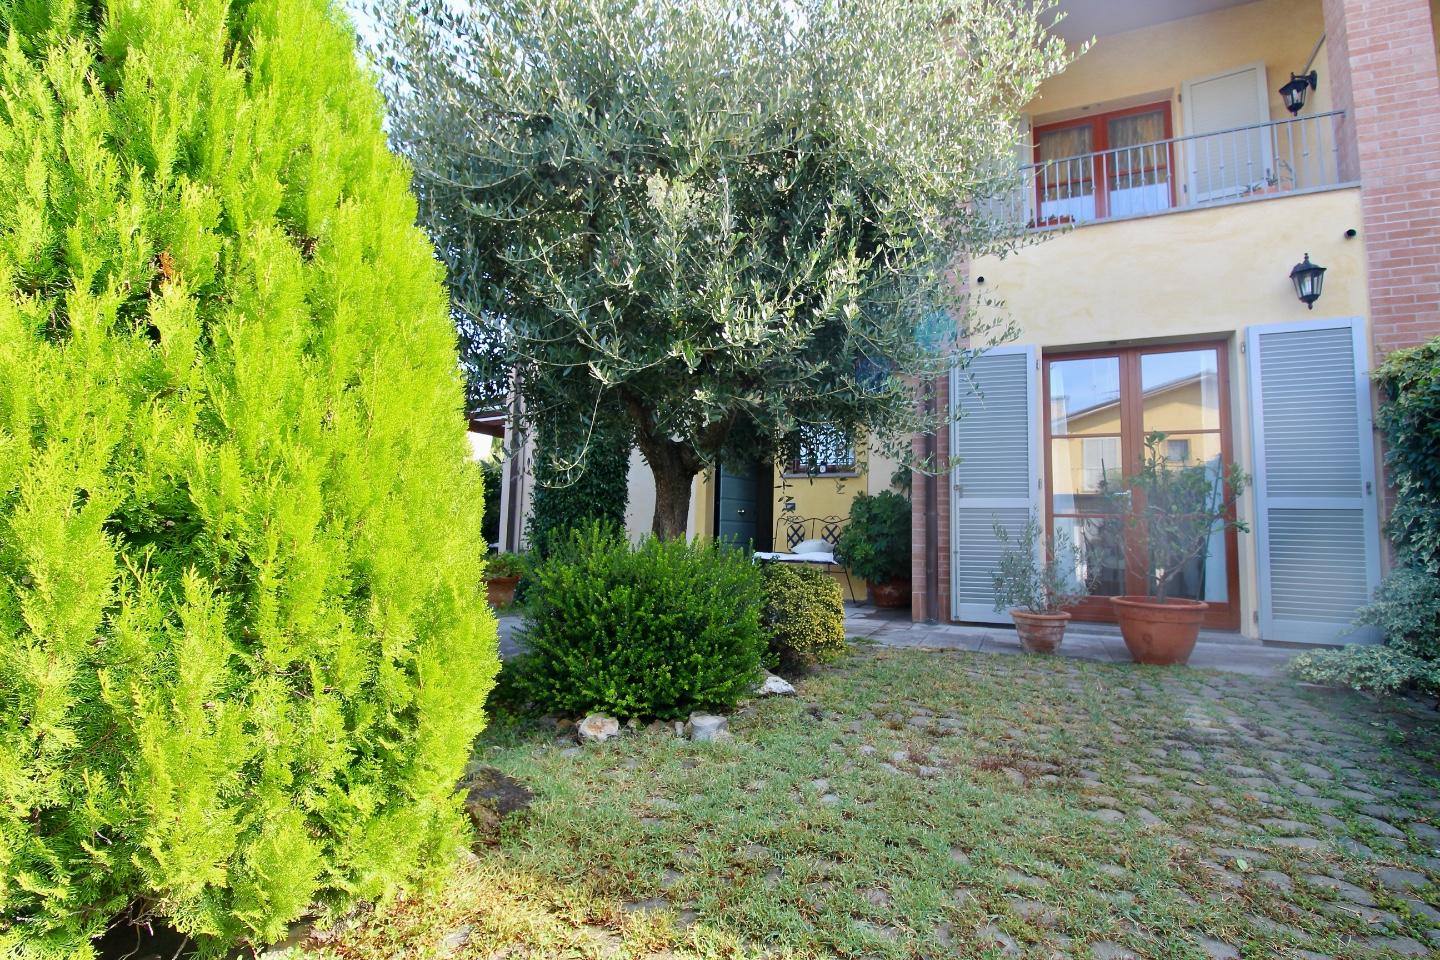 Villetta a schiera angolare in vendita a Calcinaia | Agenzia Toscana Immobiliare